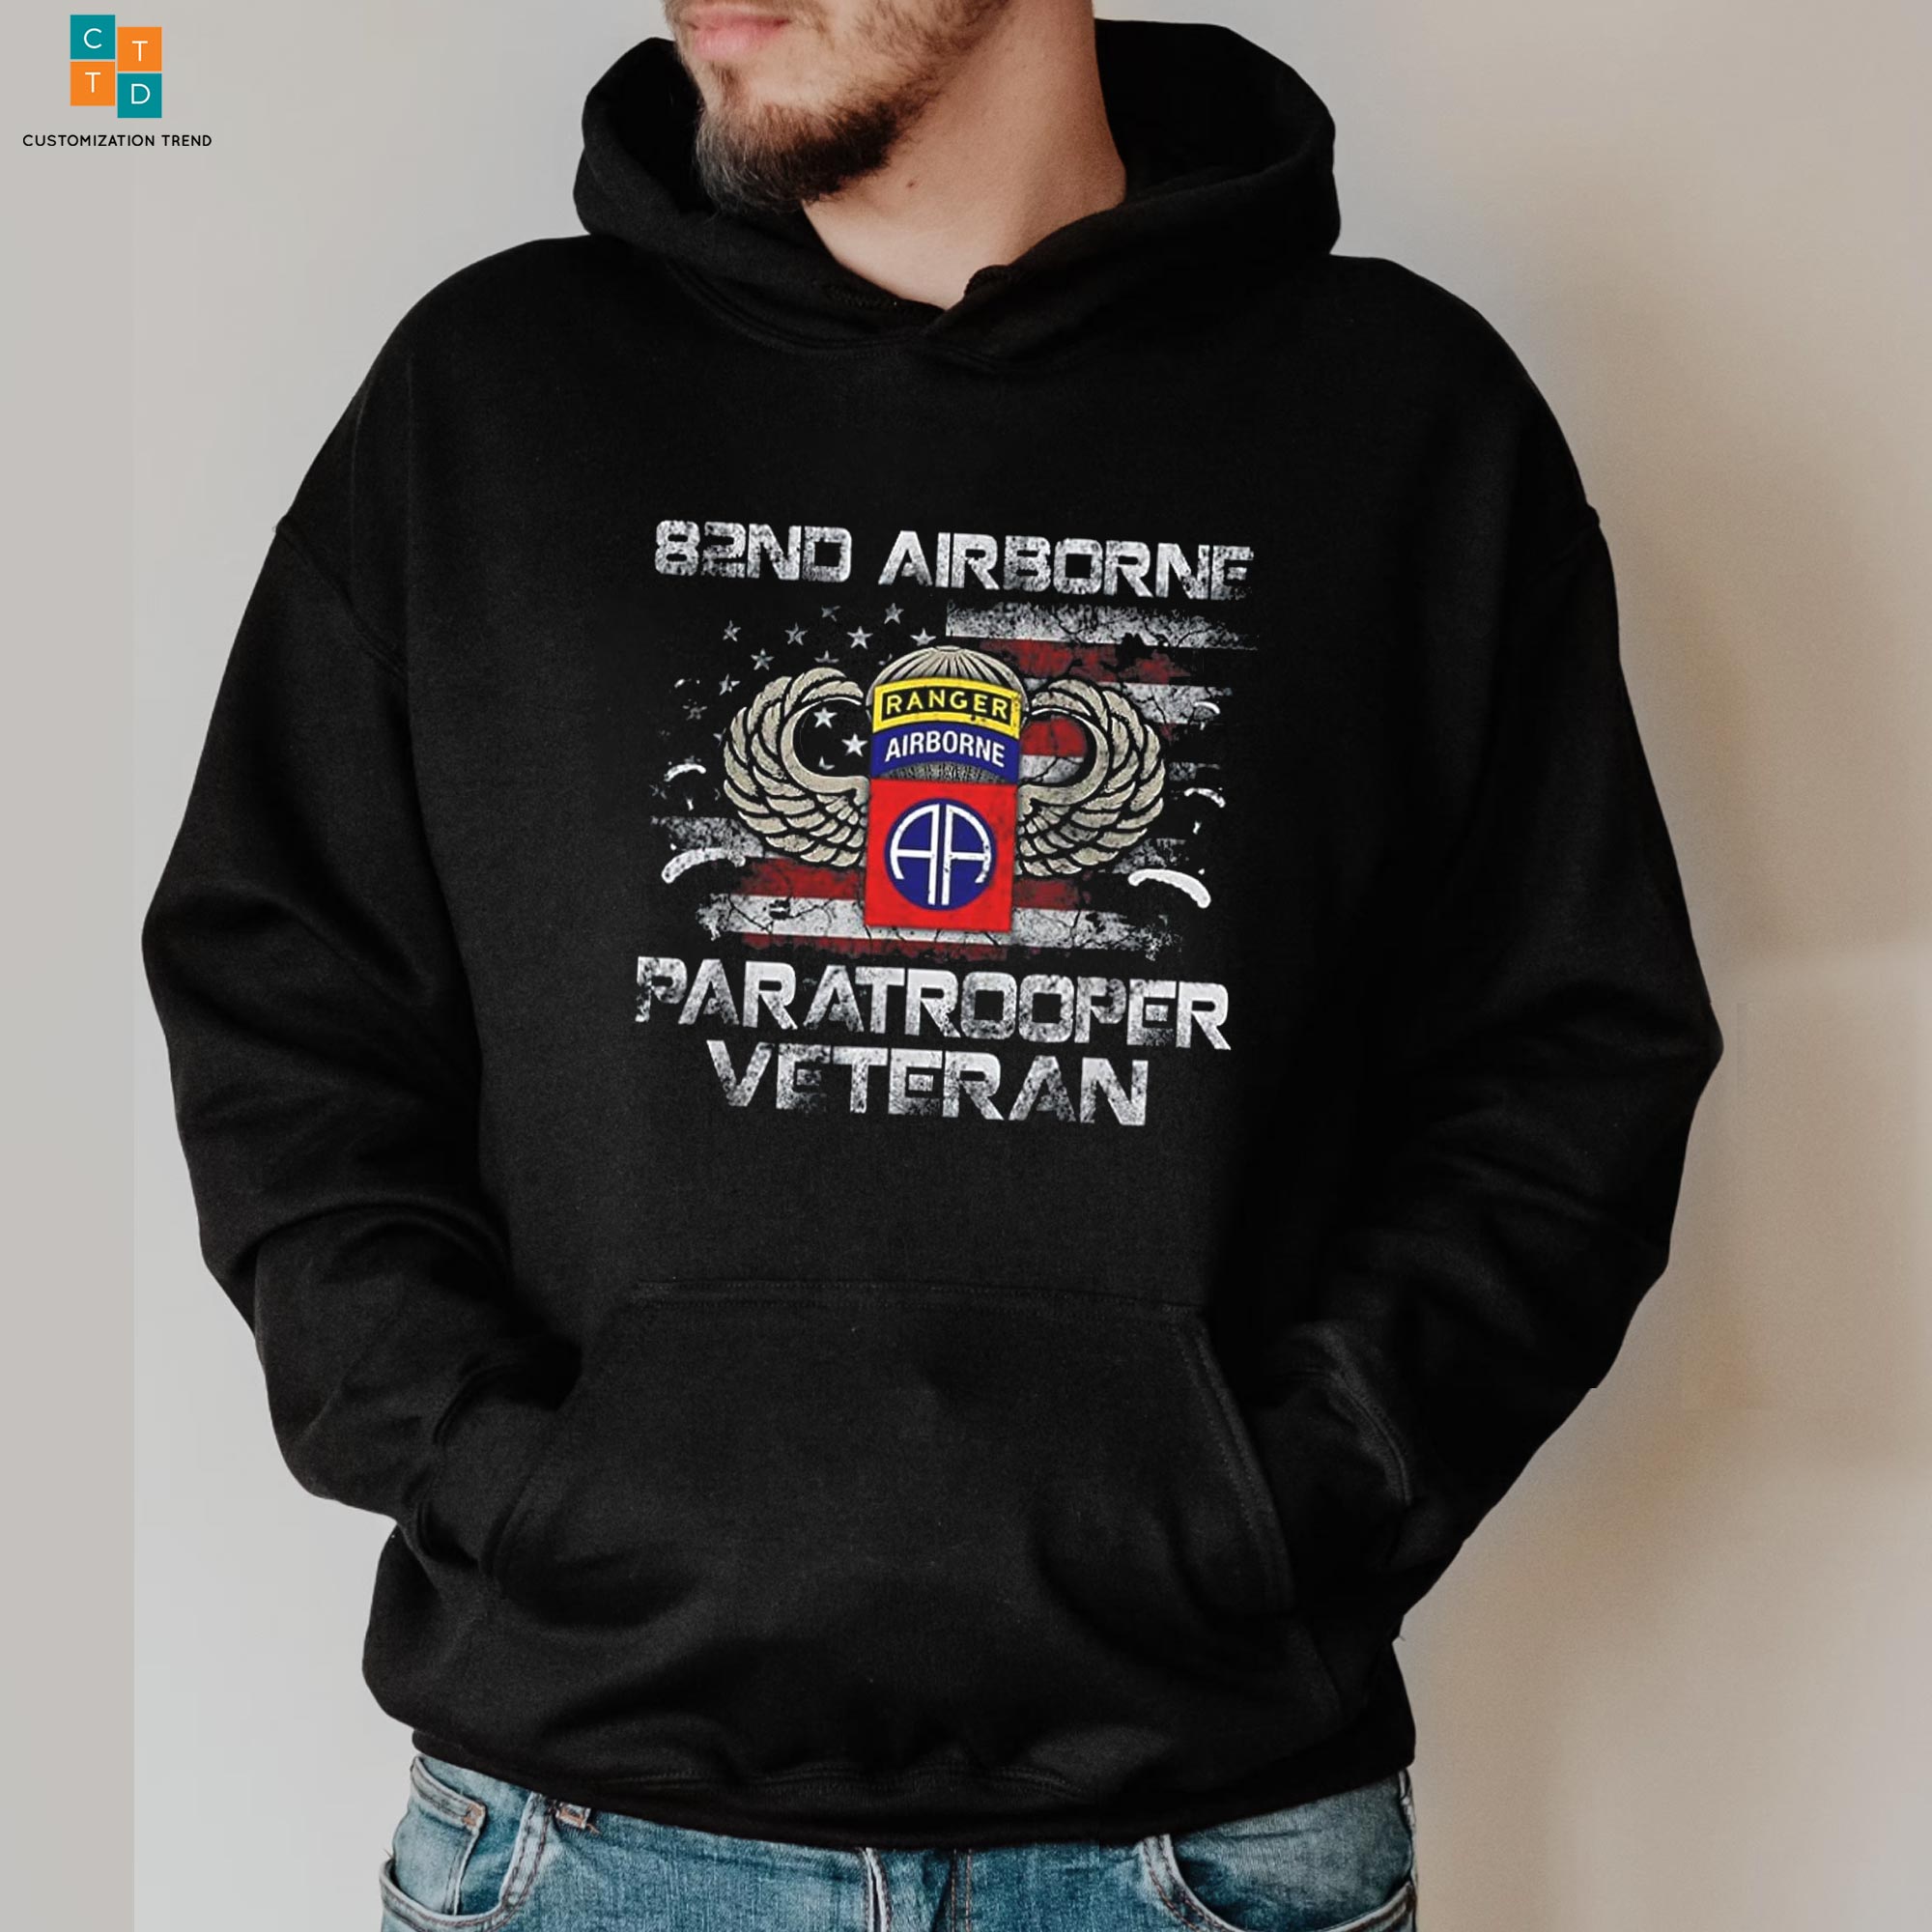 B2ND Airborne Paratrooper Veteran Hoodie, Shirt